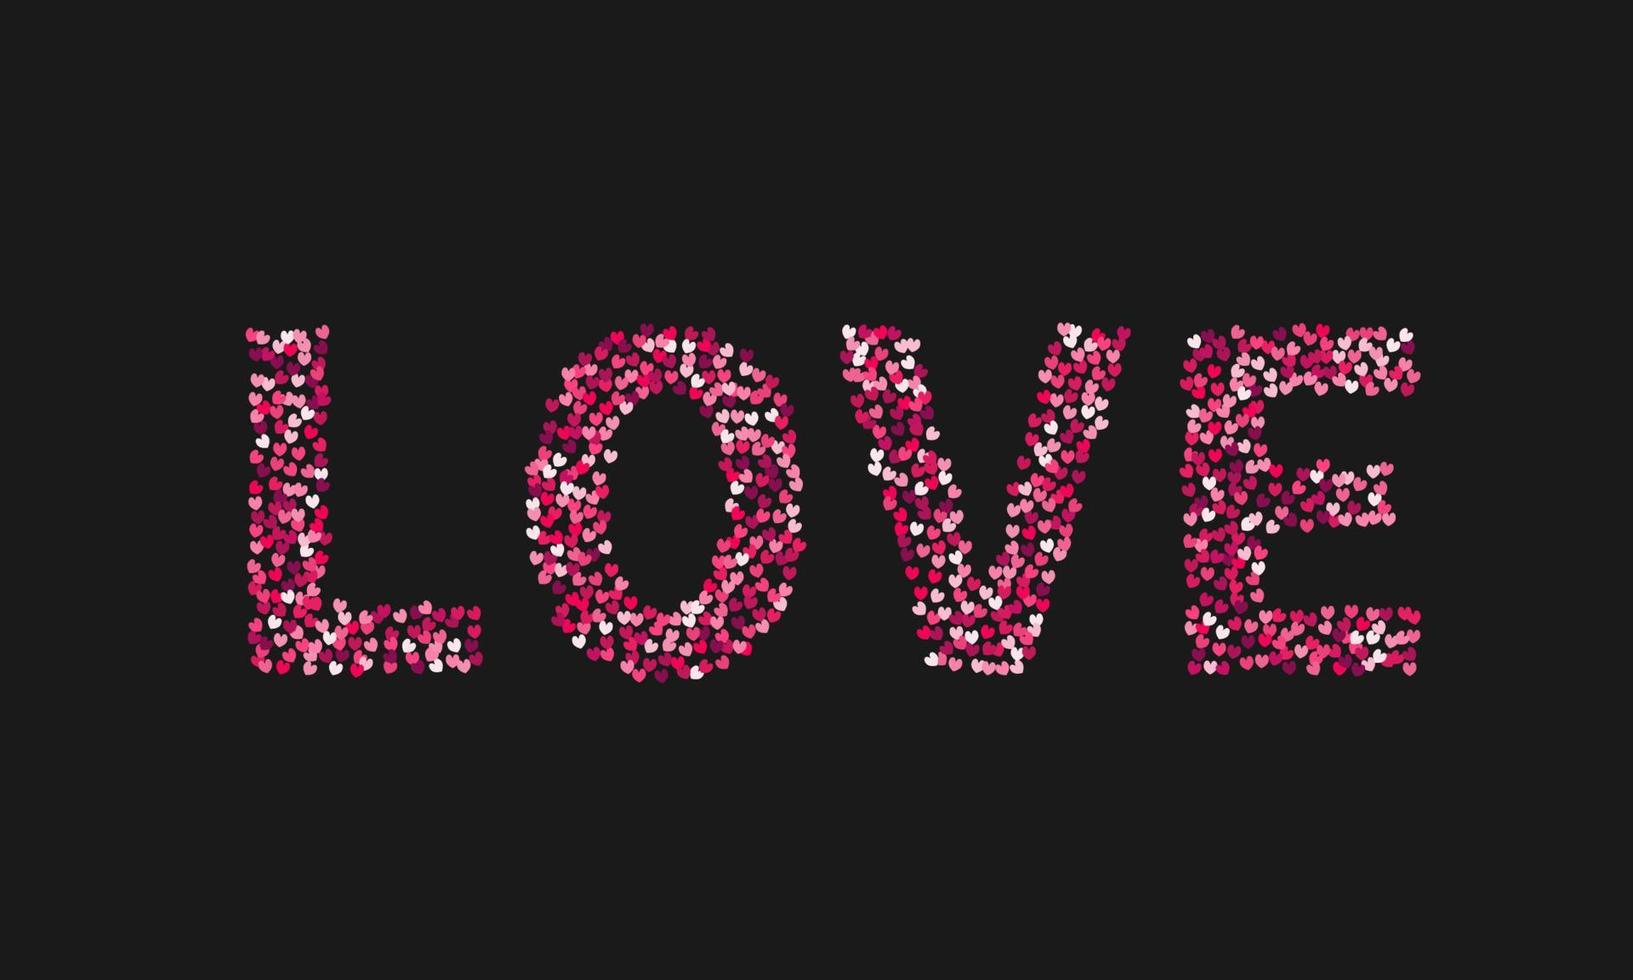 het woord liefde gemaakt van kleine harten tinten rood en roze op zwarte achtergrond. Valentijnsdag typografie poster. eenvoudig te bewerken sjabloon voor uw ontwerpprojecten. vector